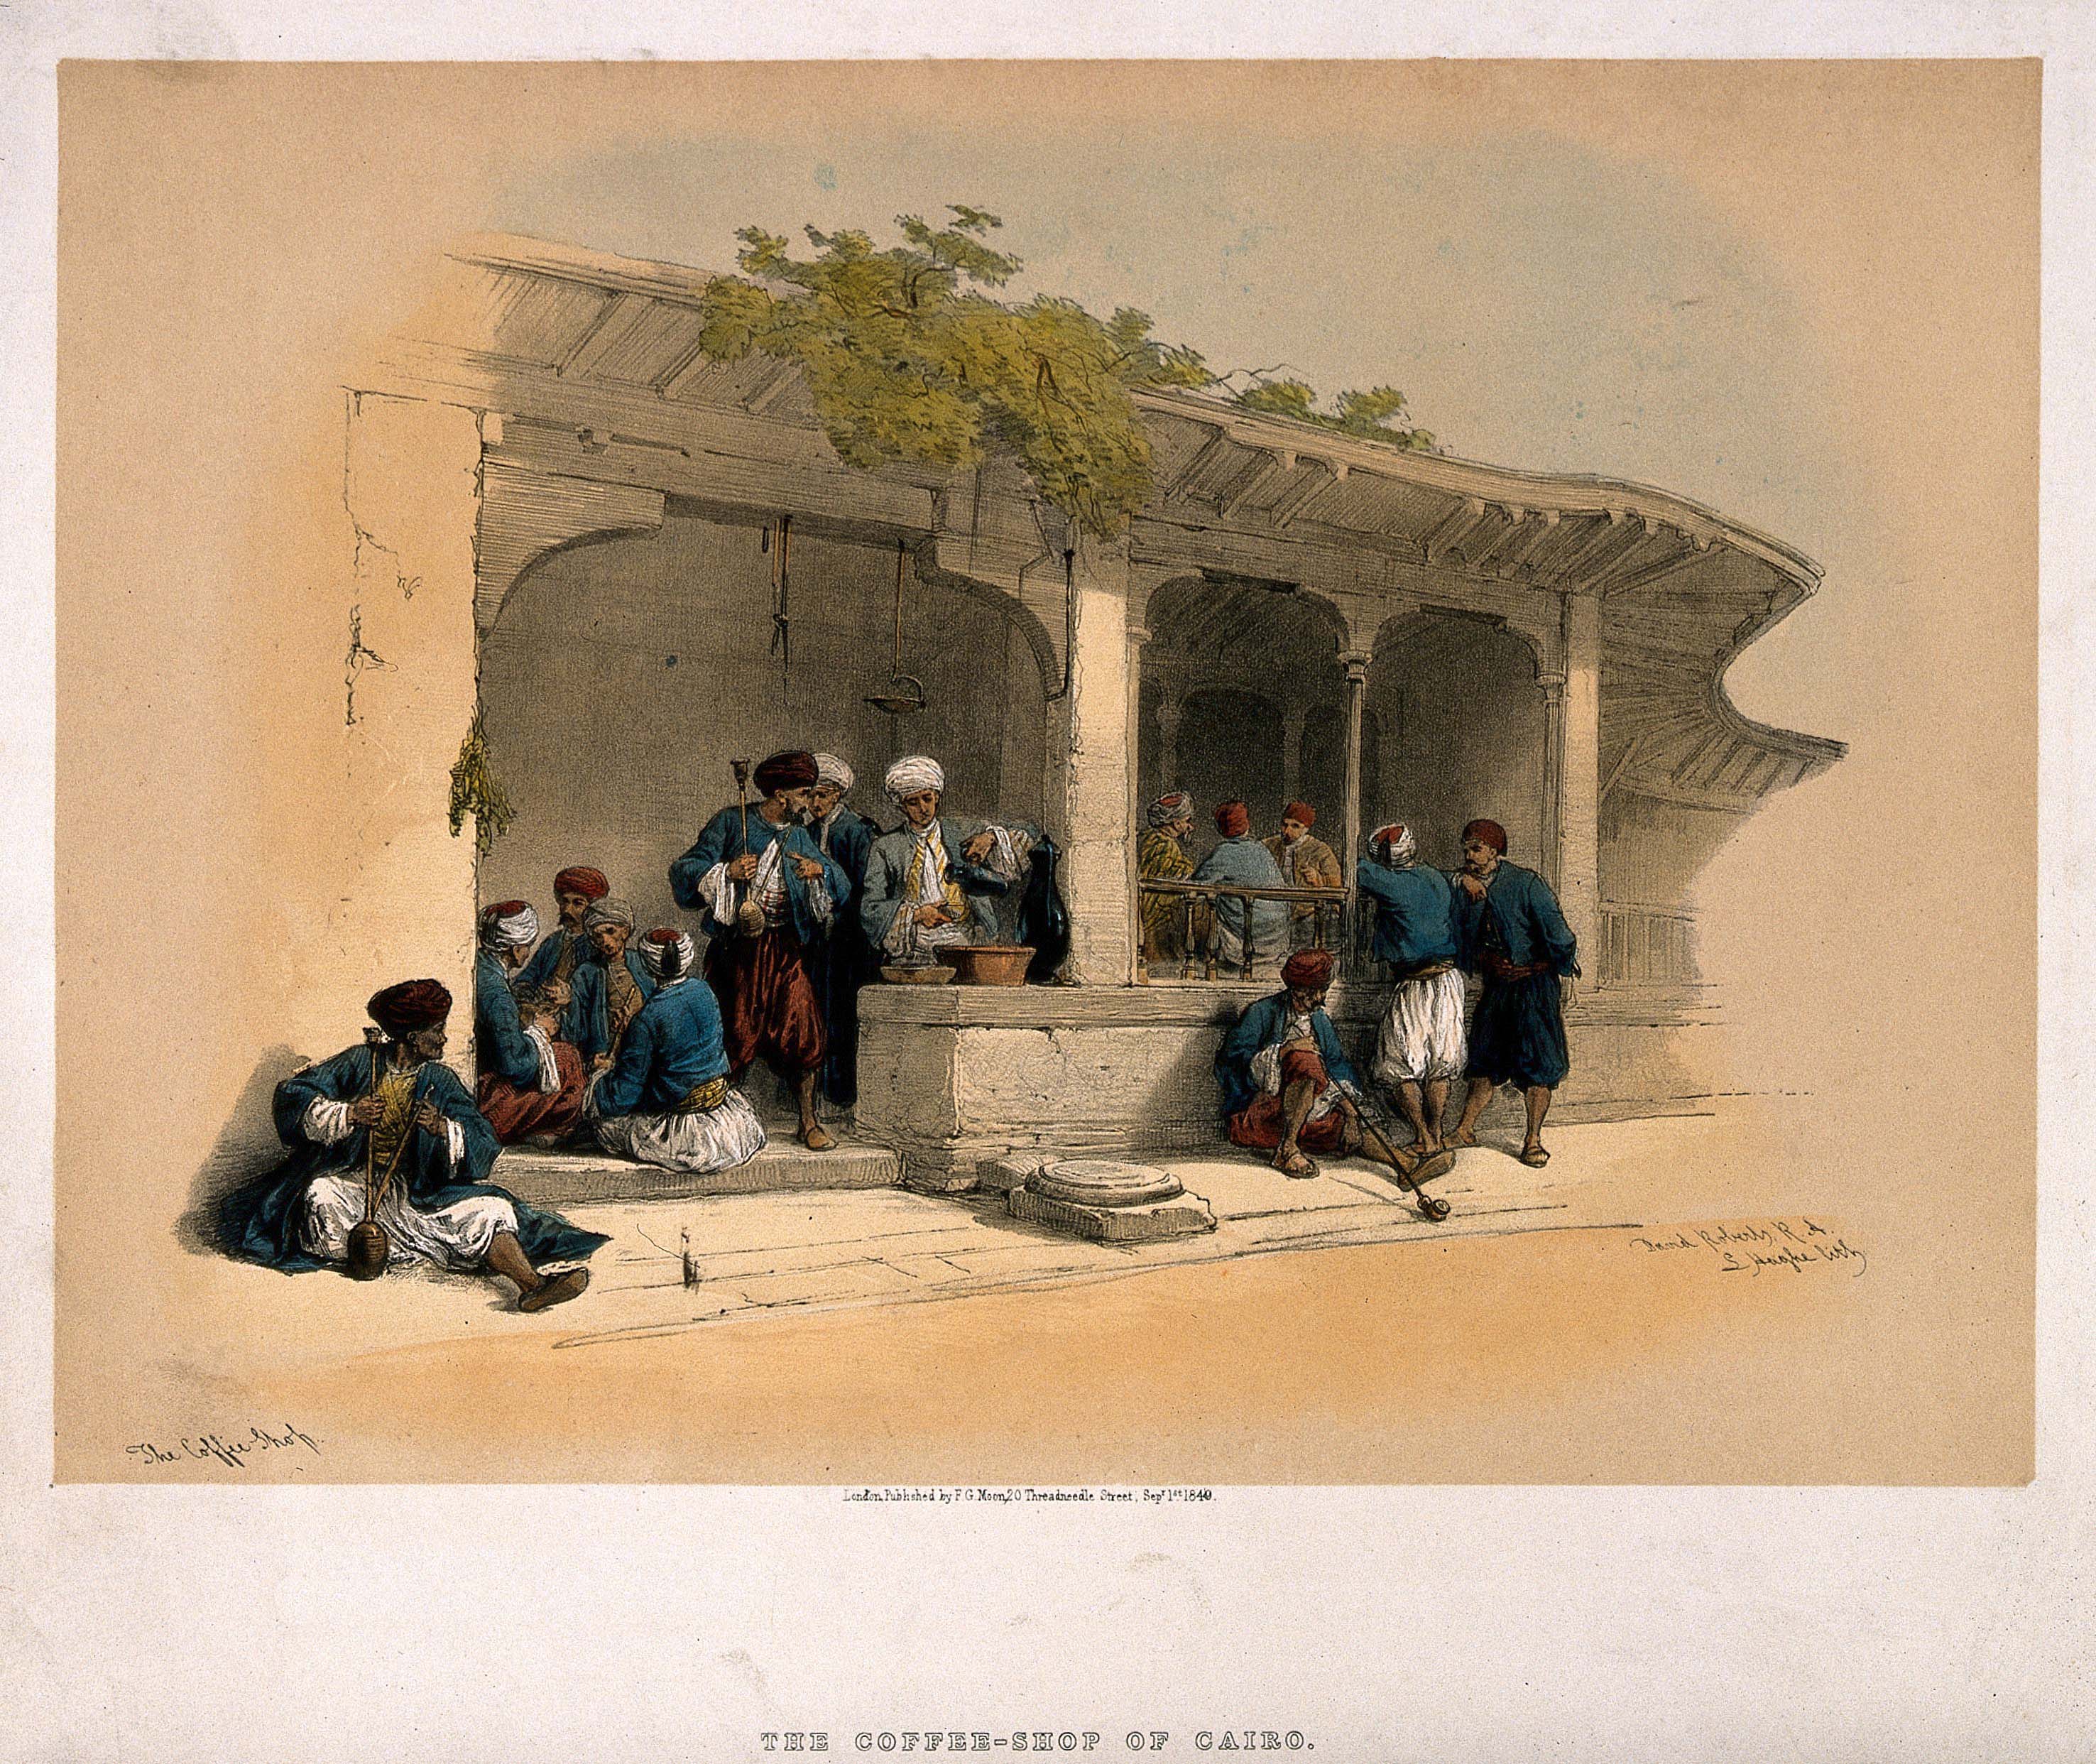 Mannen in een koffiehuis in Caïro. Ze drinken er koffie, roken pijpen en voeren gesprekken, door Louis Haghe, 1849. Wellcome Library nr. 25220i.